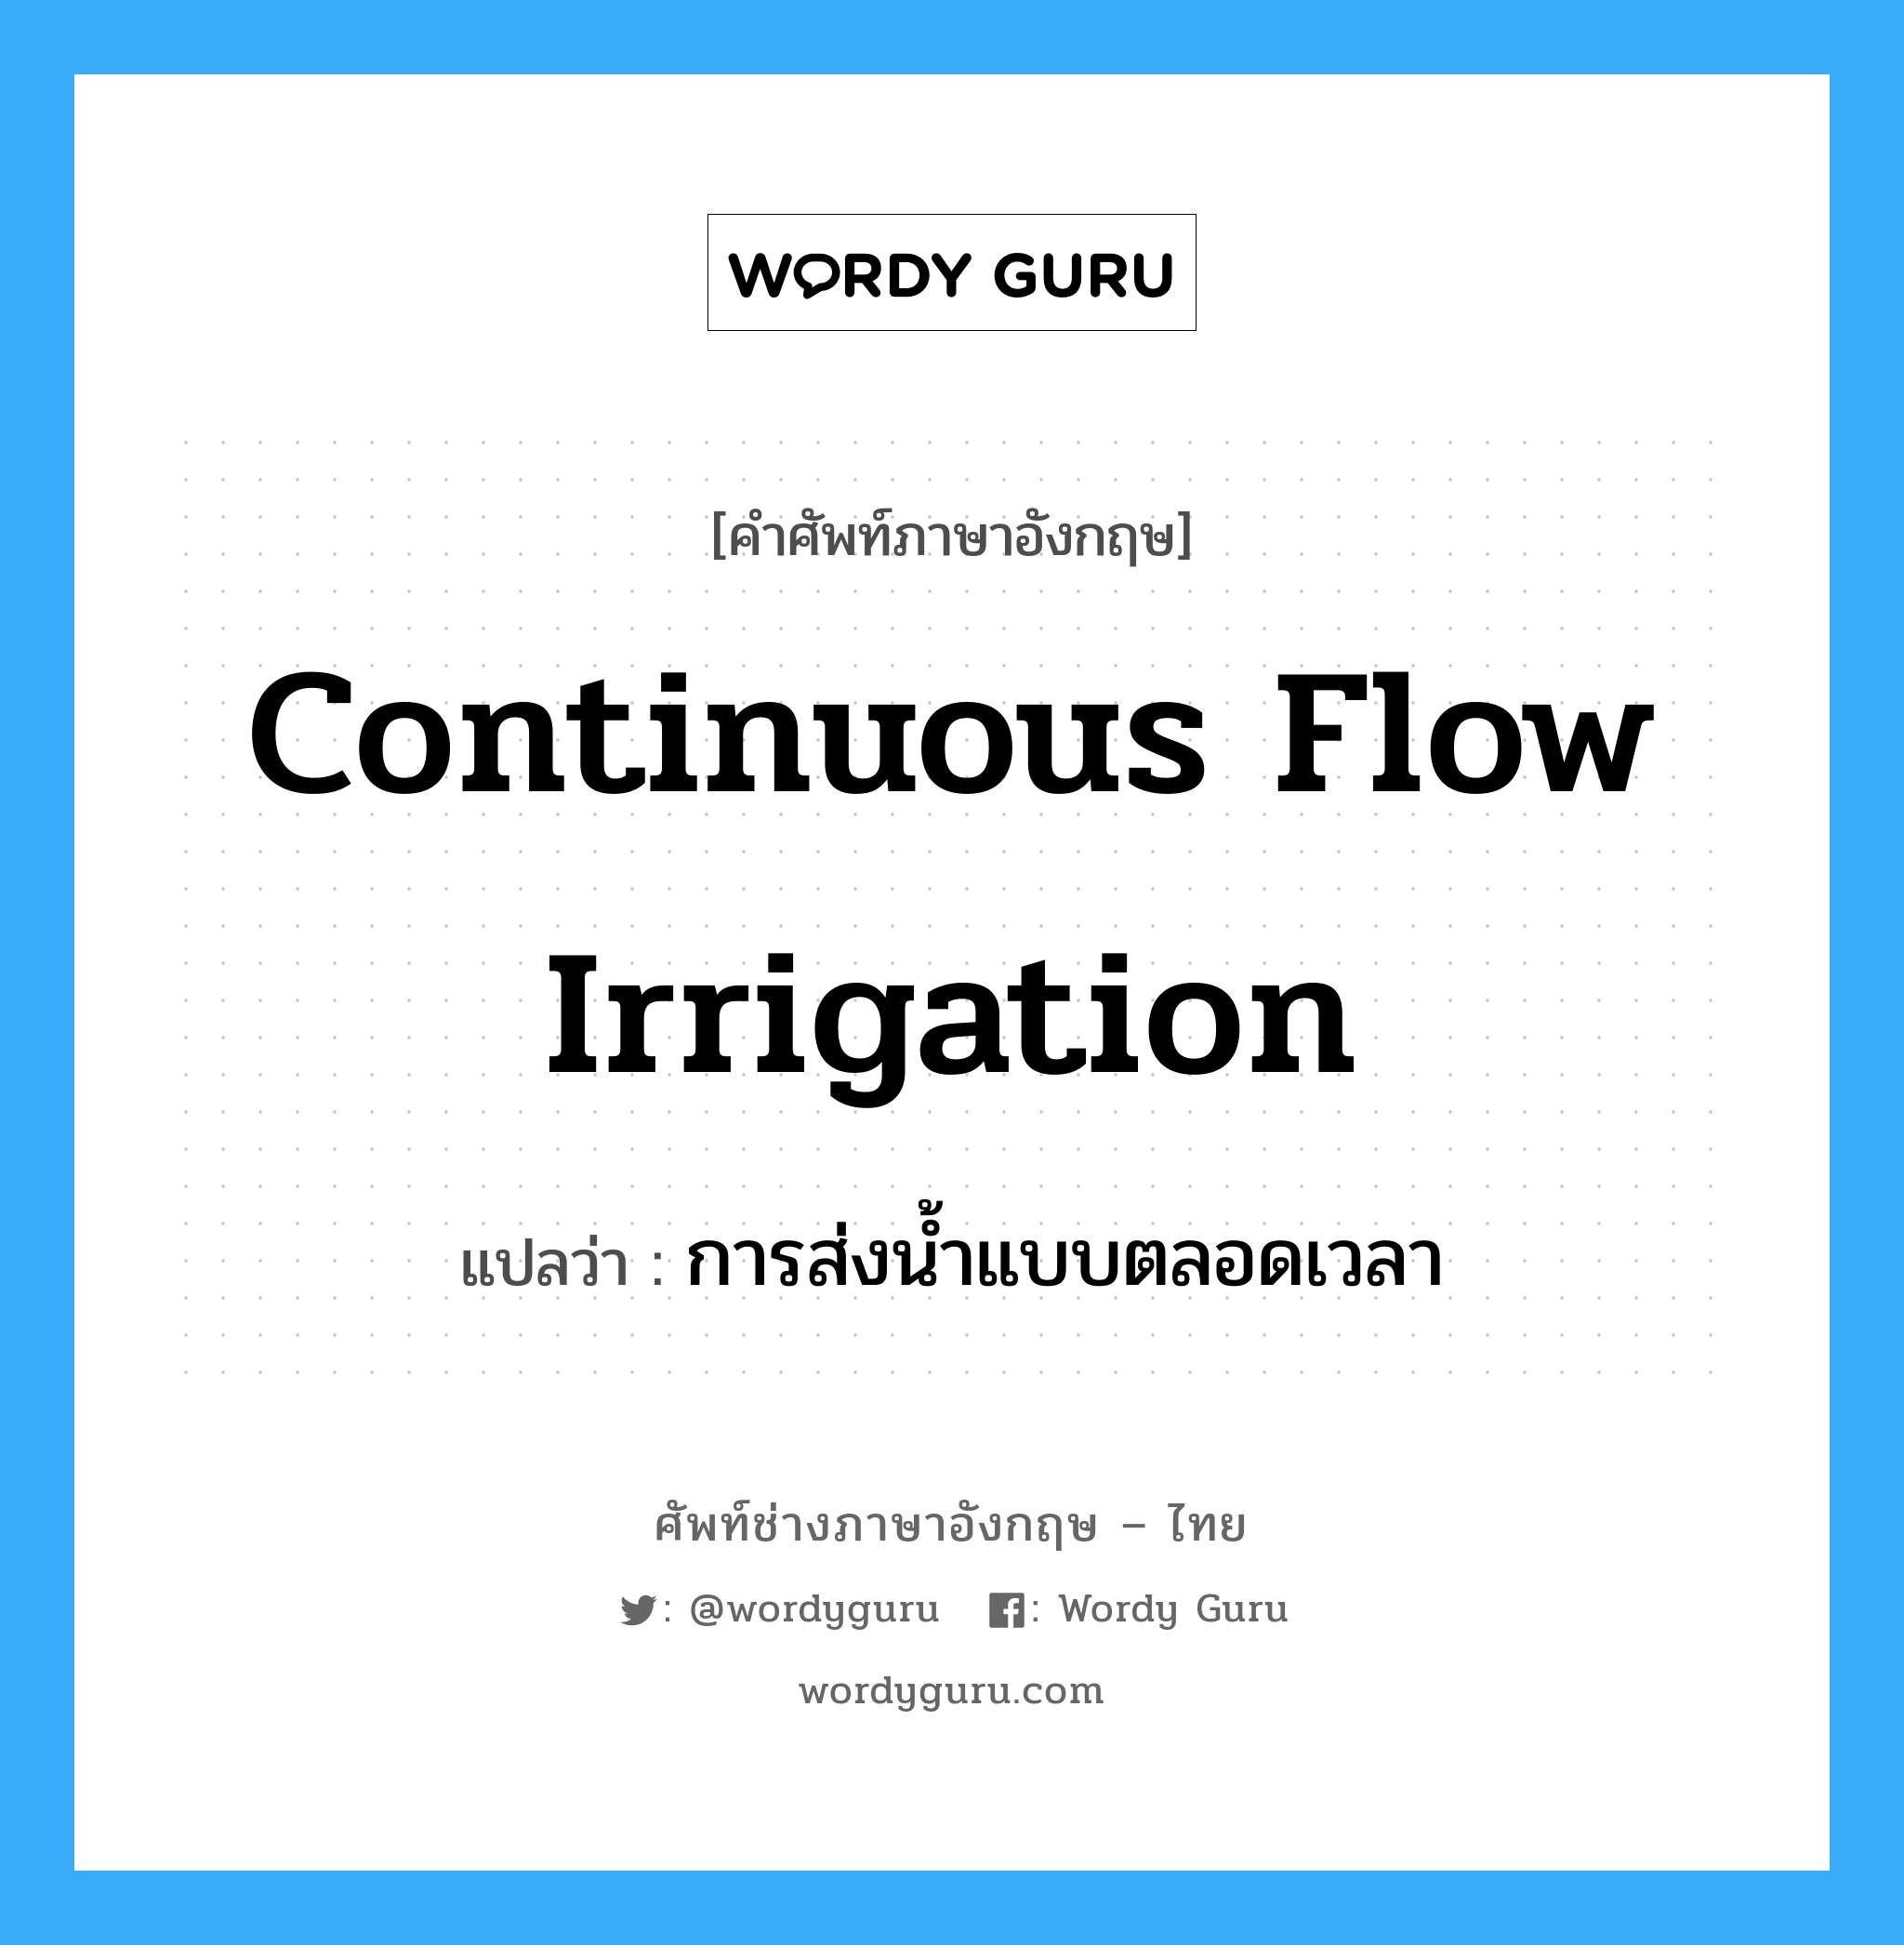 การส่งน้ำแบบตลอดเวลา ภาษาอังกฤษ?, คำศัพท์ช่างภาษาอังกฤษ - ไทย การส่งน้ำแบบตลอดเวลา คำศัพท์ภาษาอังกฤษ การส่งน้ำแบบตลอดเวลา แปลว่า continuous flow irrigation